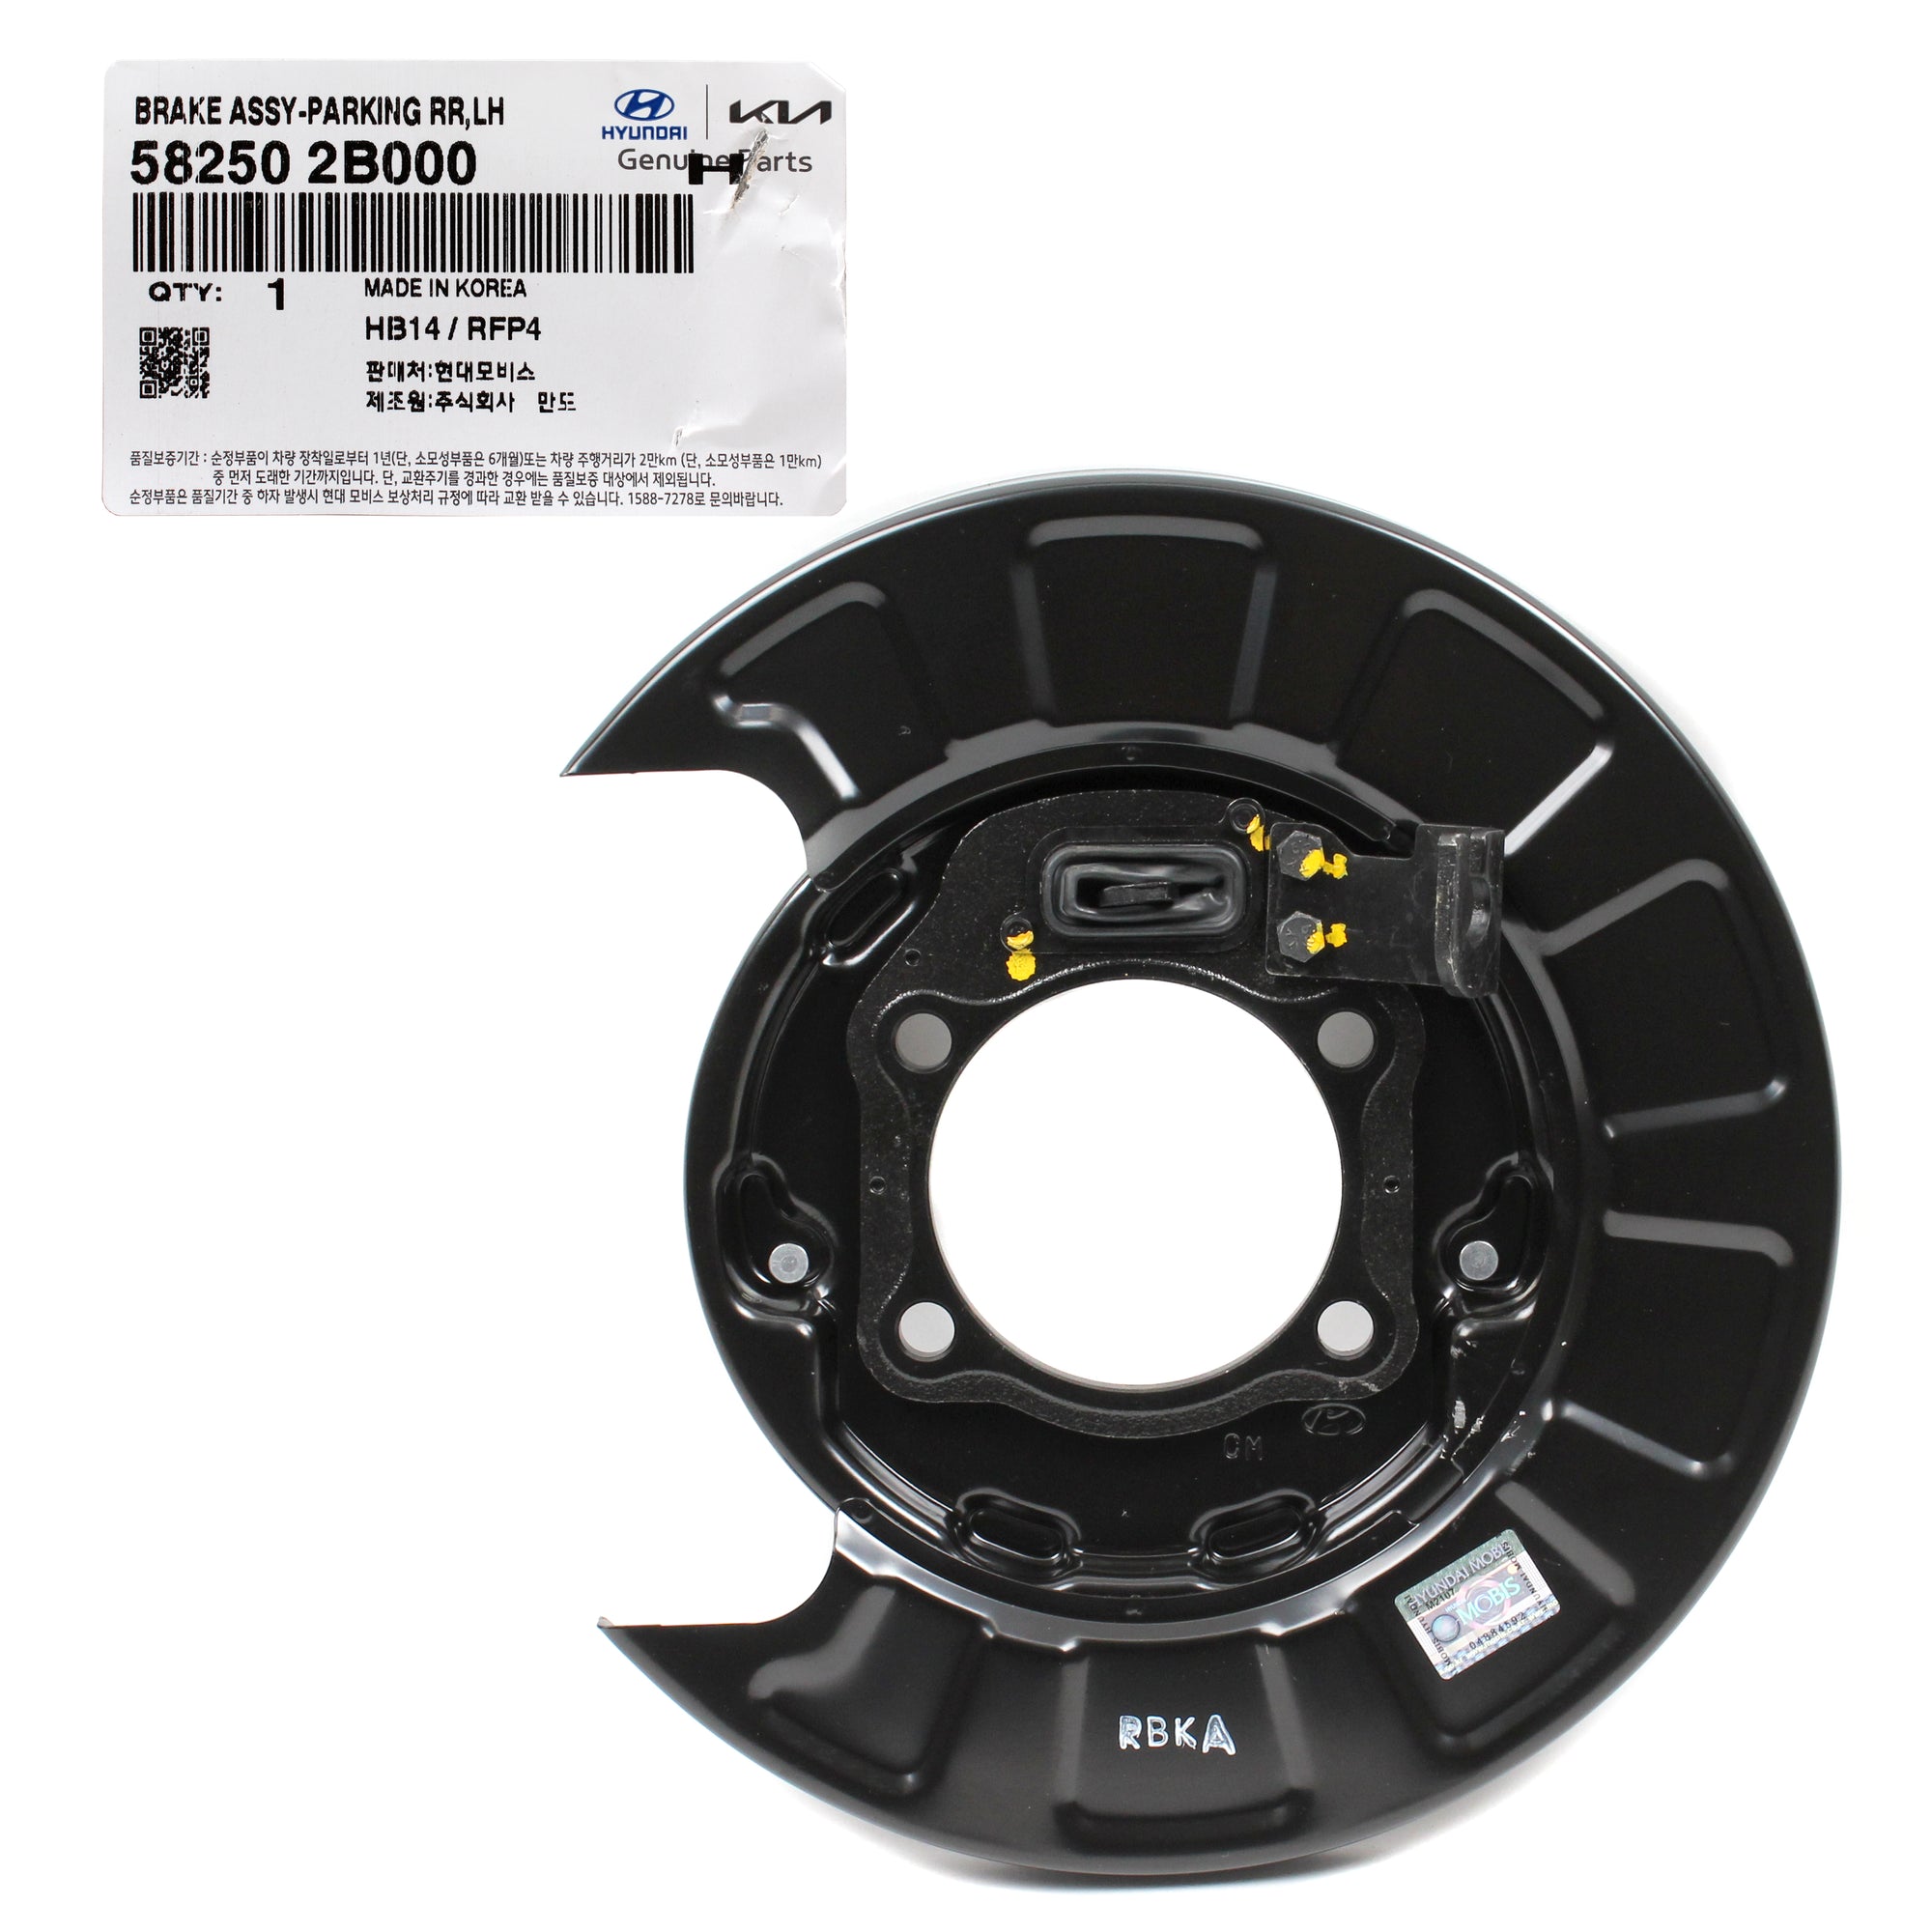 GENUINE Rear Brake Parking Plate LEFT for 07-09 Hyundai Santa Fe 582502B000